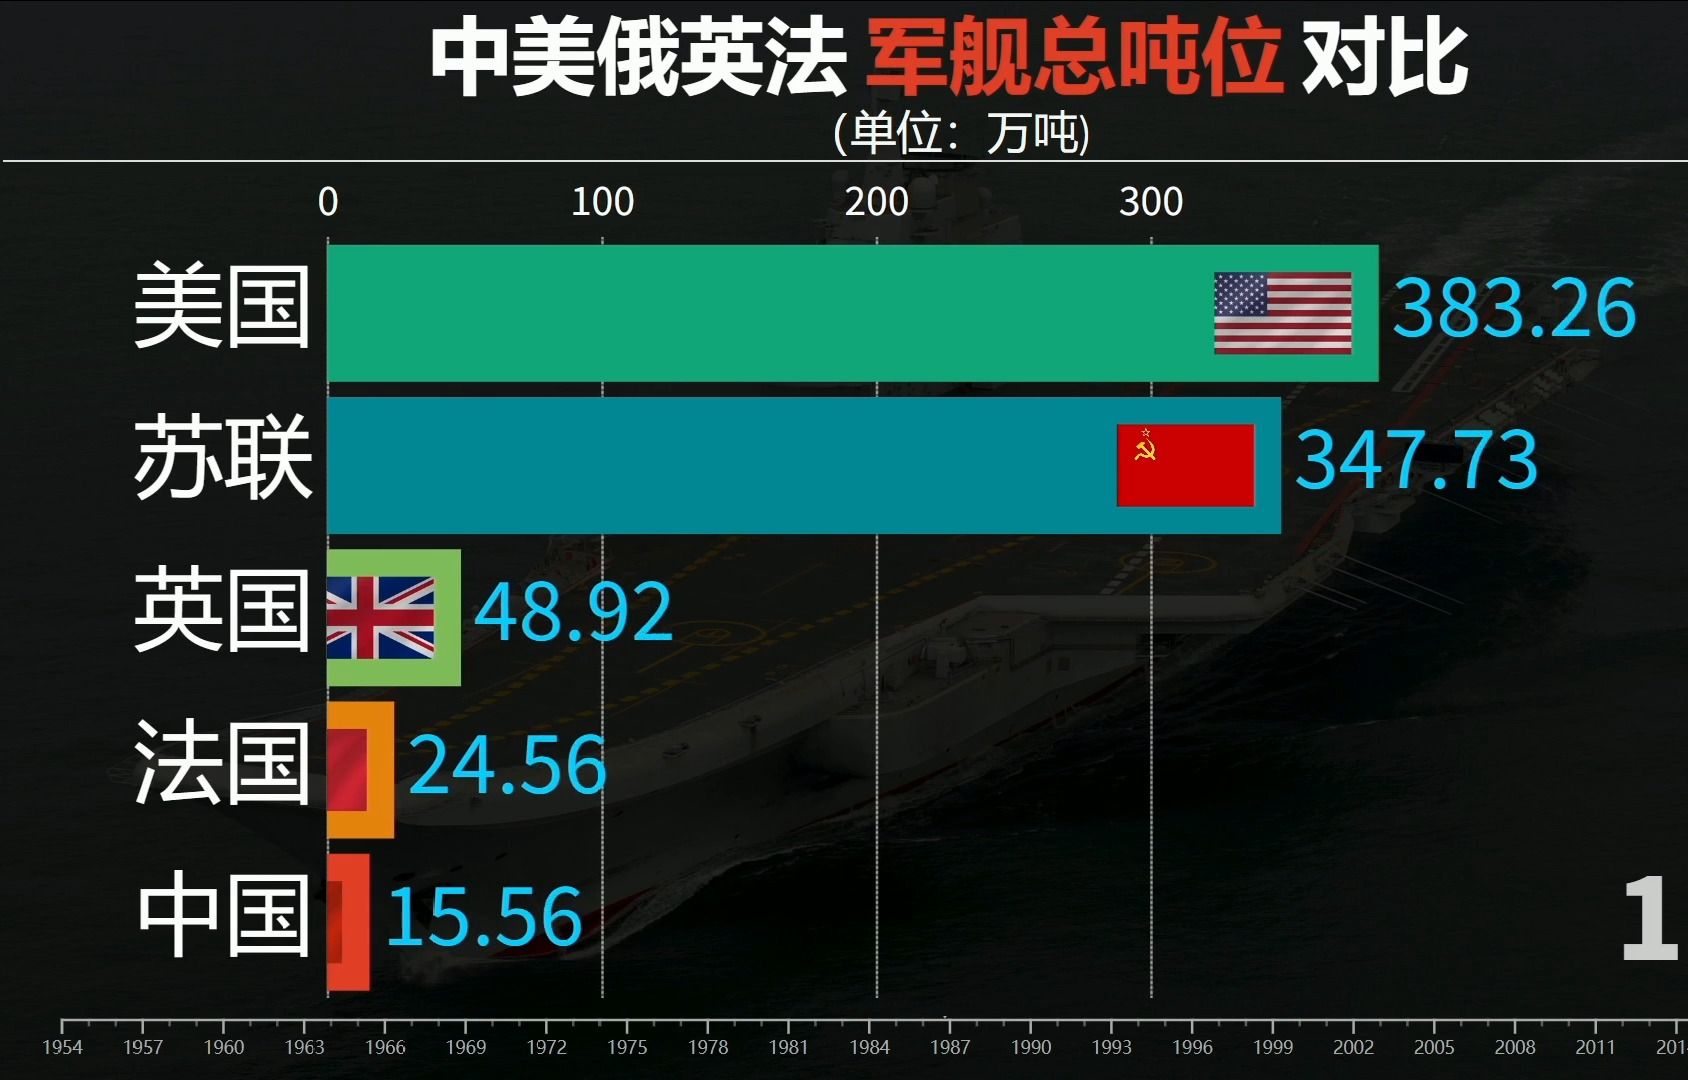 中美舰艇数量对比表图片